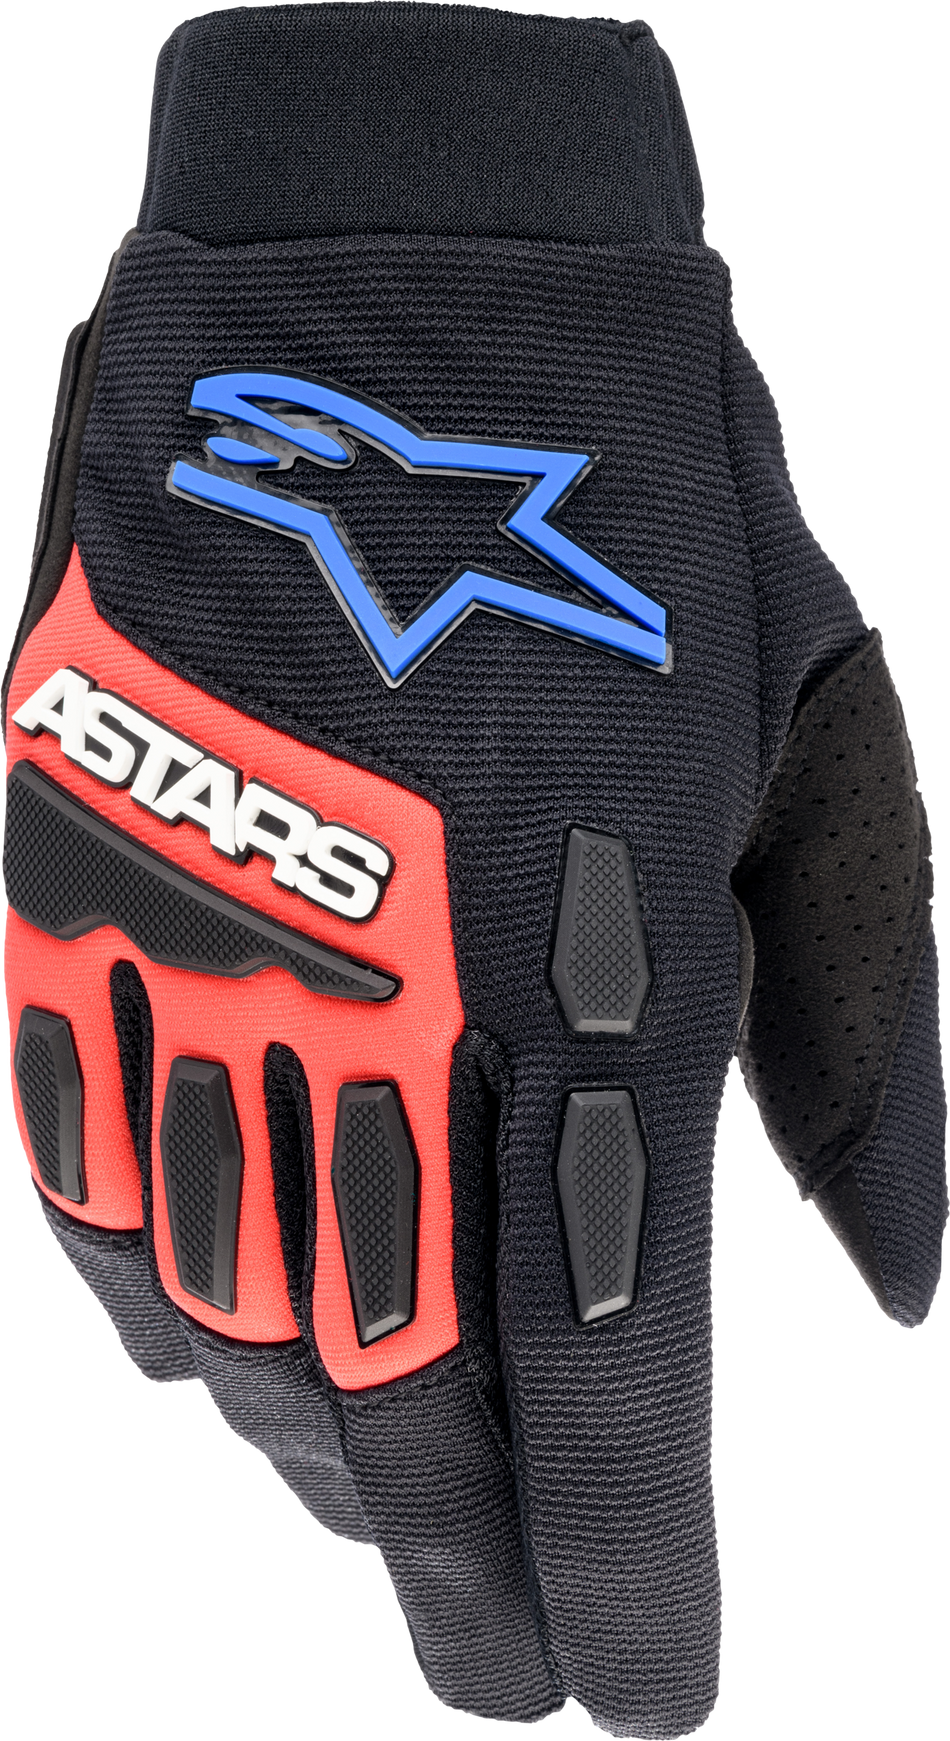 ALPINESTARS Full Bore Xt Gloves Black/Bright Blue/Red Md 3563623-1317-MD